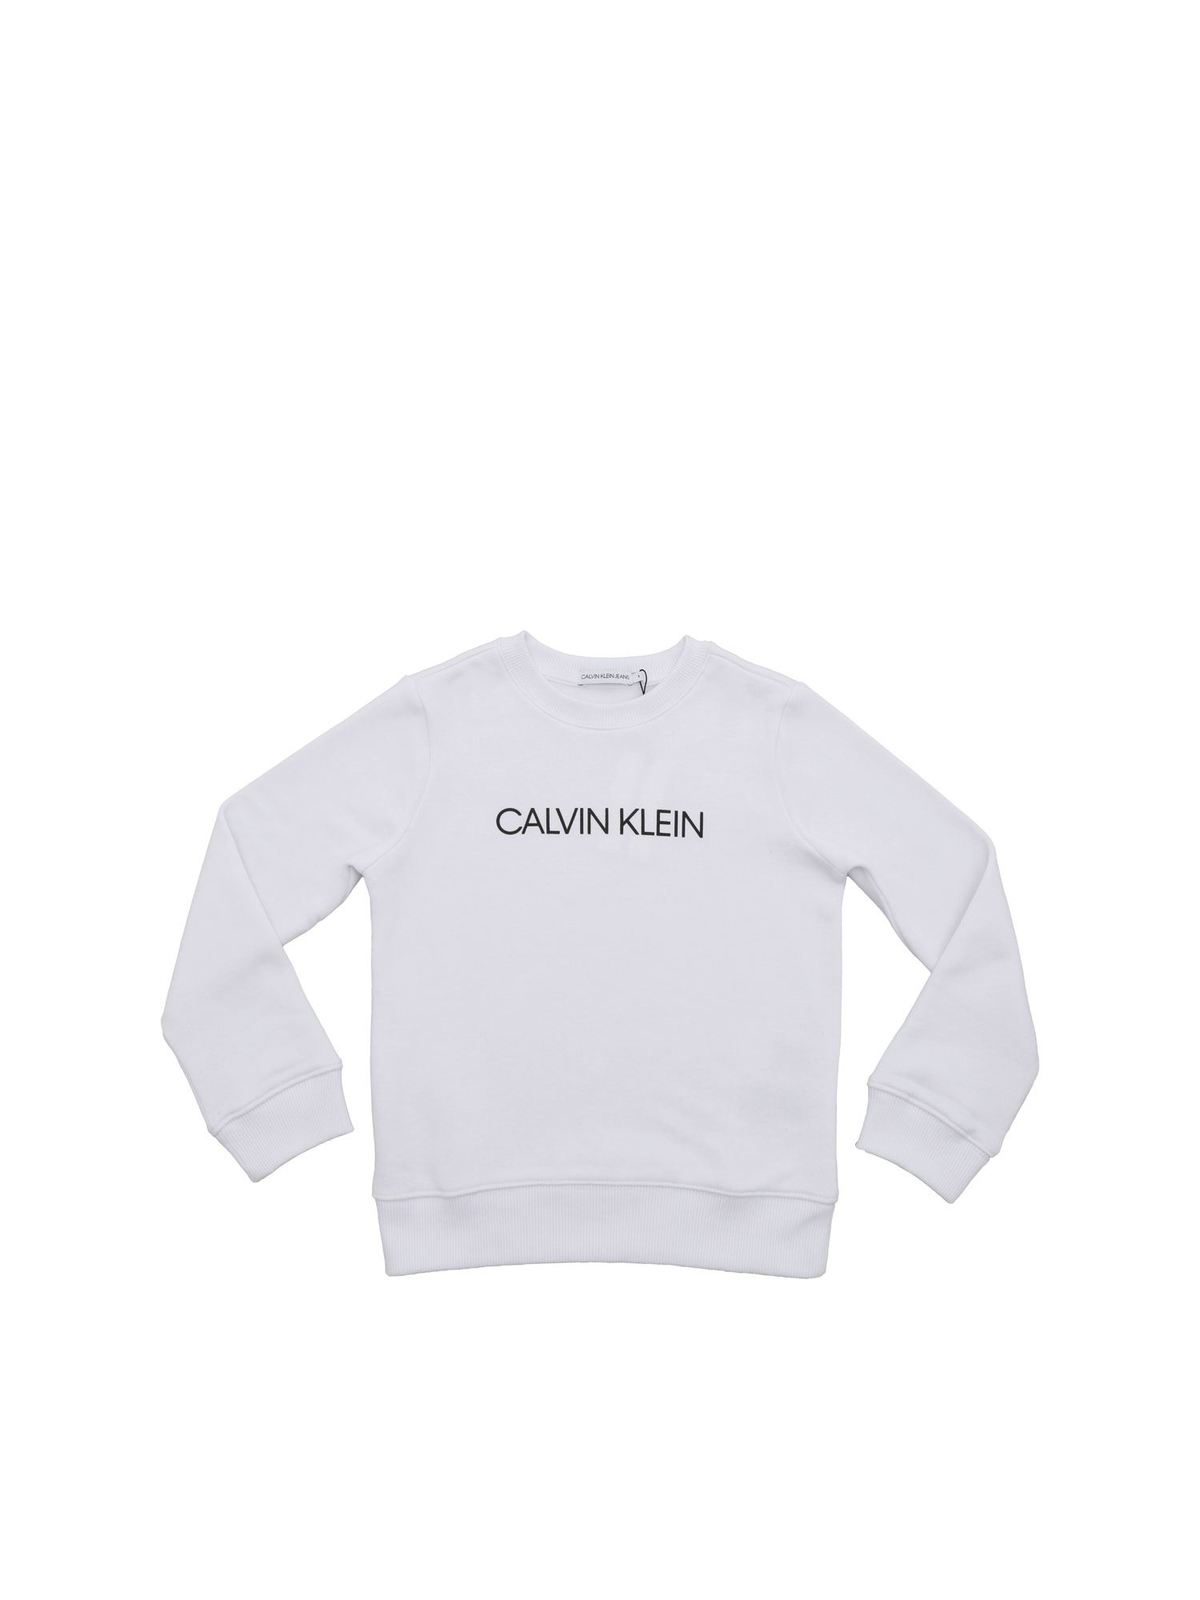 white calvin klein sweater